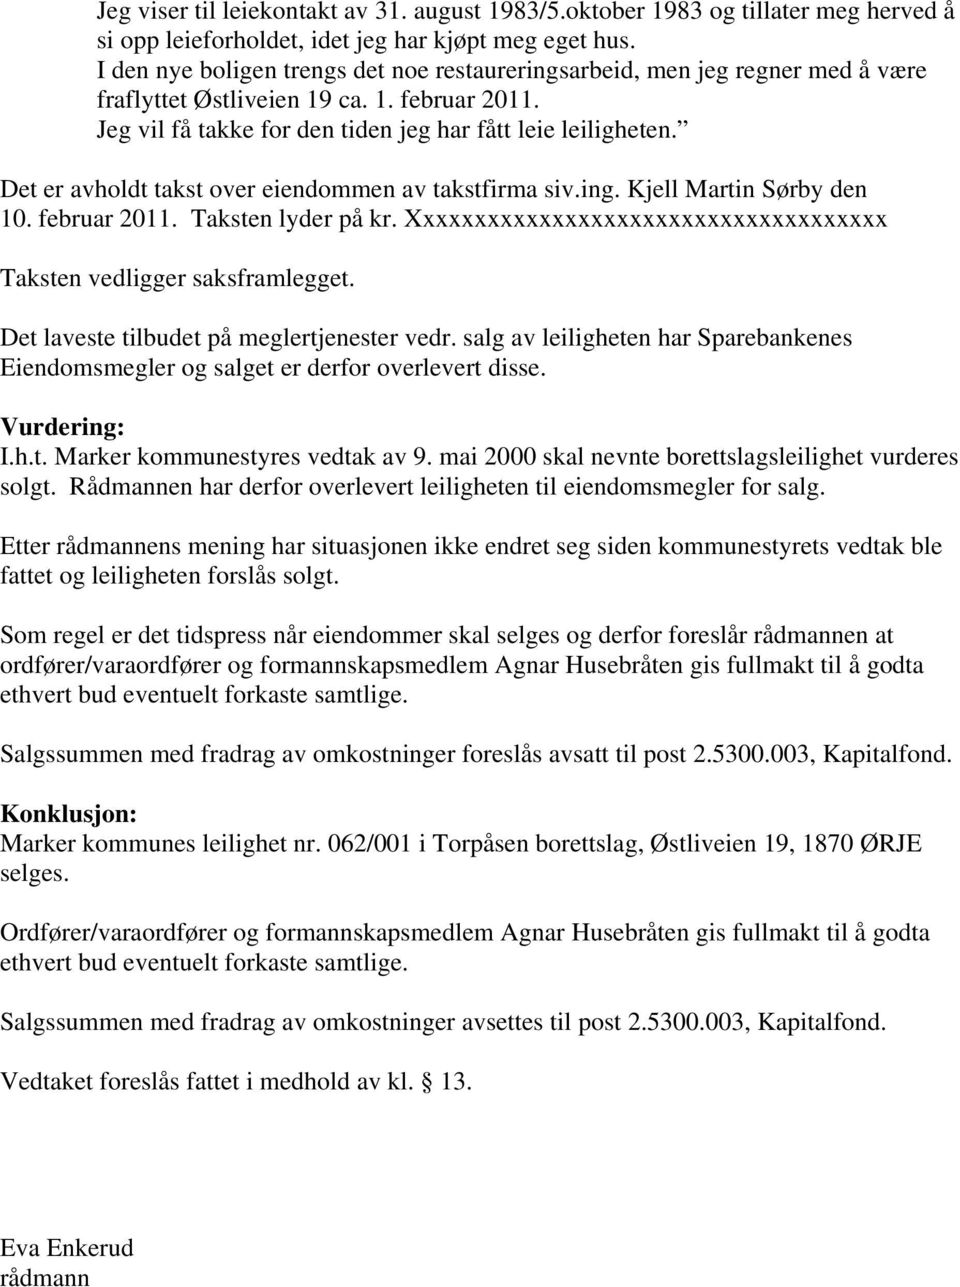 Det er avholdt takst over eiendommen av takstfirma siv.ing. Kjell Martin Sørby den 10. februar 2011. Taksten lyder på kr. Xxxxxxxxxxxxxxxxxxxxxxxxxxxxxxxxxxxxx Taksten vedligger saksframlegget.